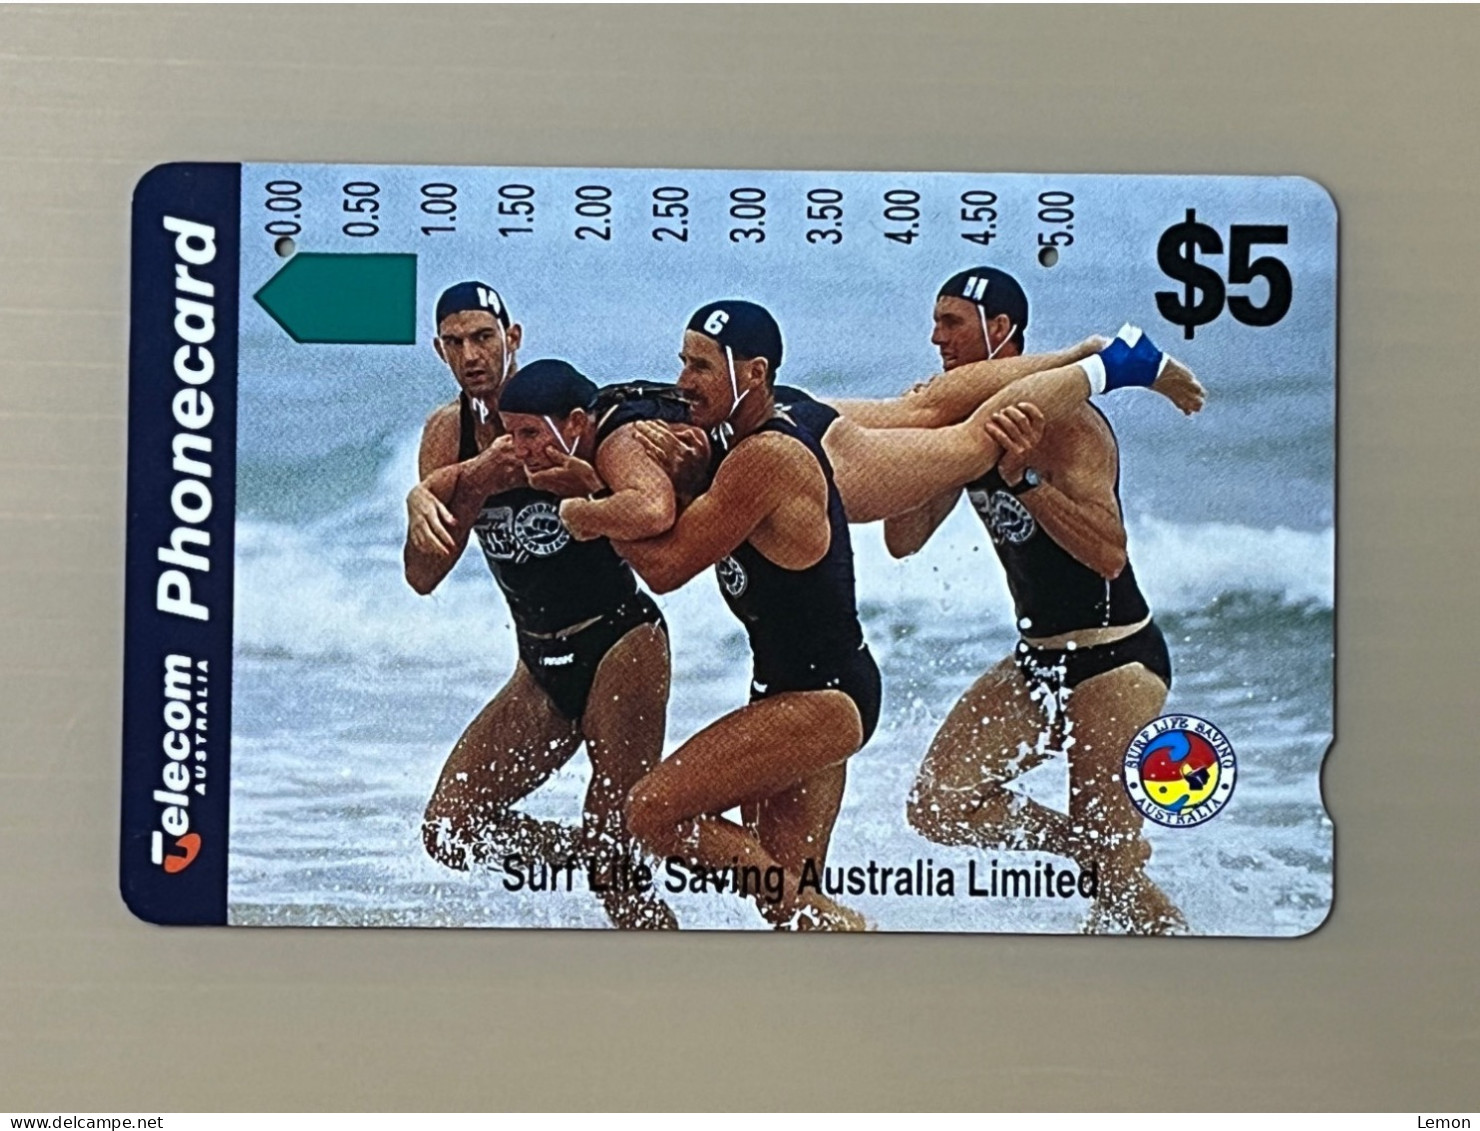 Australia Phonecard, Surf Lite Saving Australia Limited, 1 Used Card - Australien